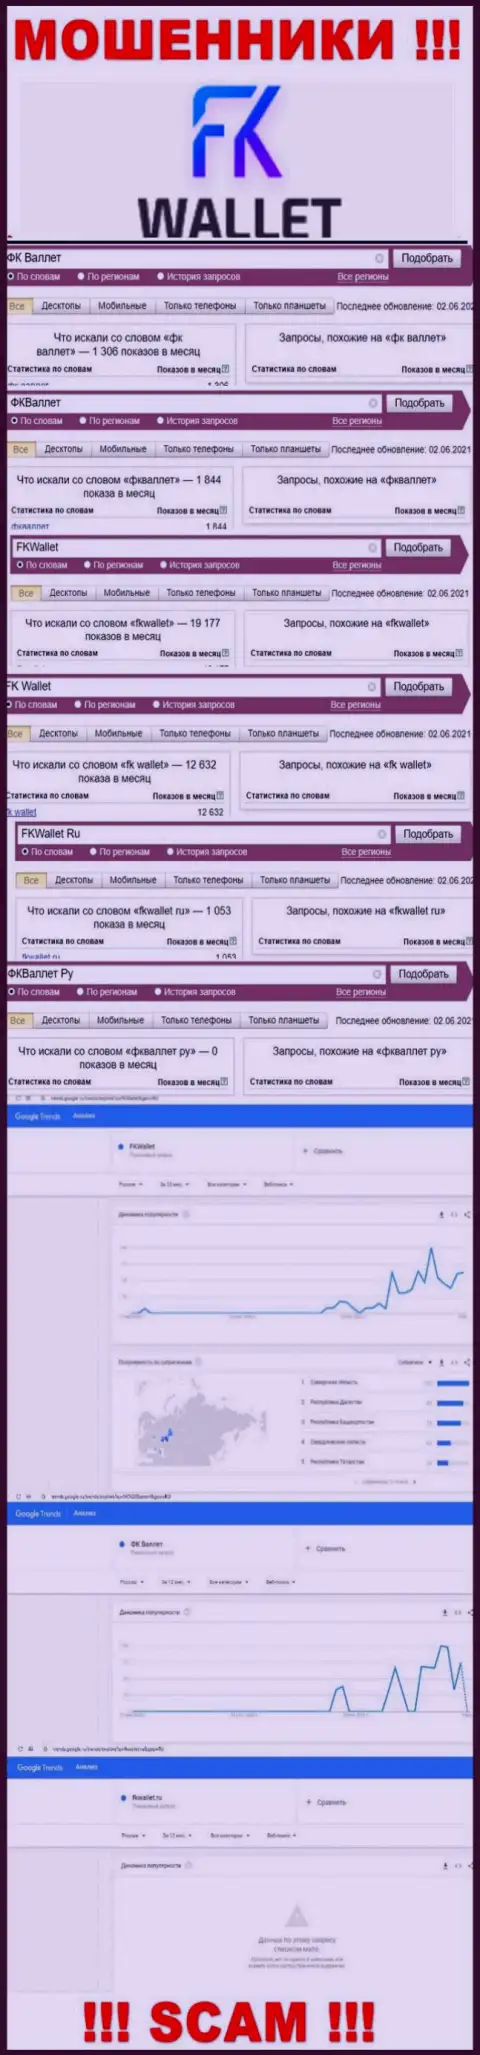 Скриншот статистики online запросов по незаконно действующей конторе FKWallet